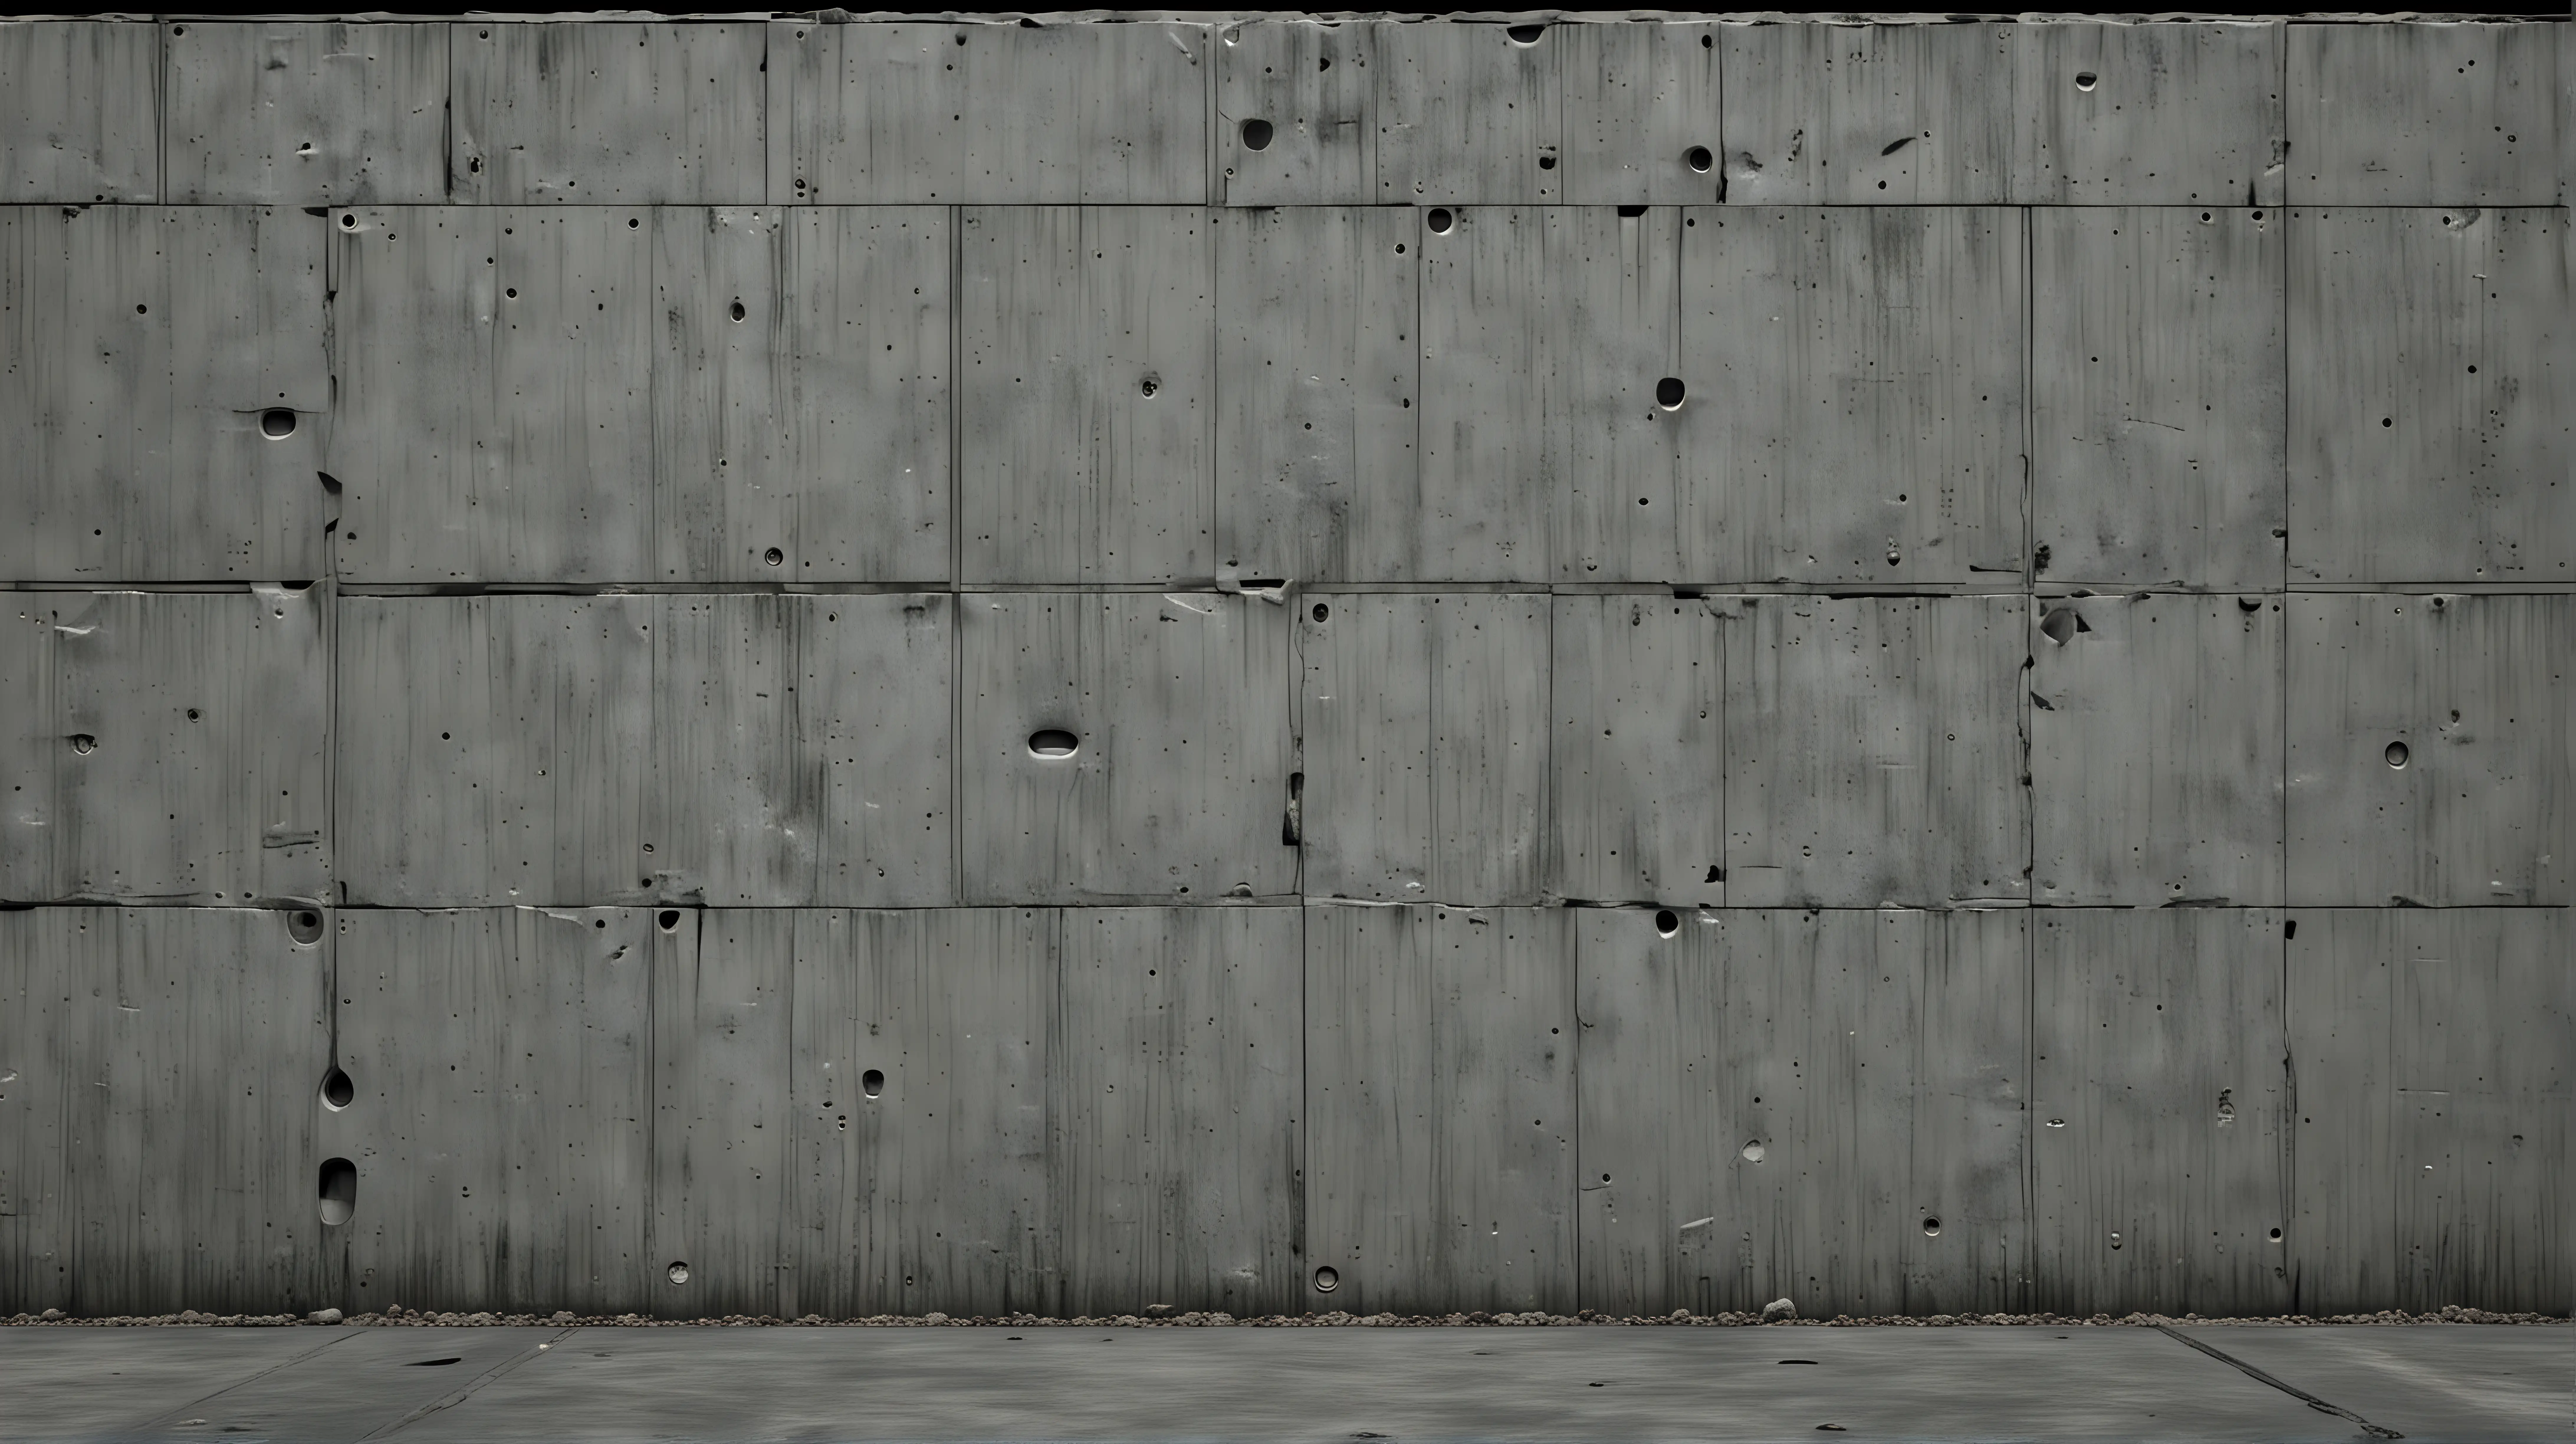 SciFi Concrete Wall with Futuristic Elements